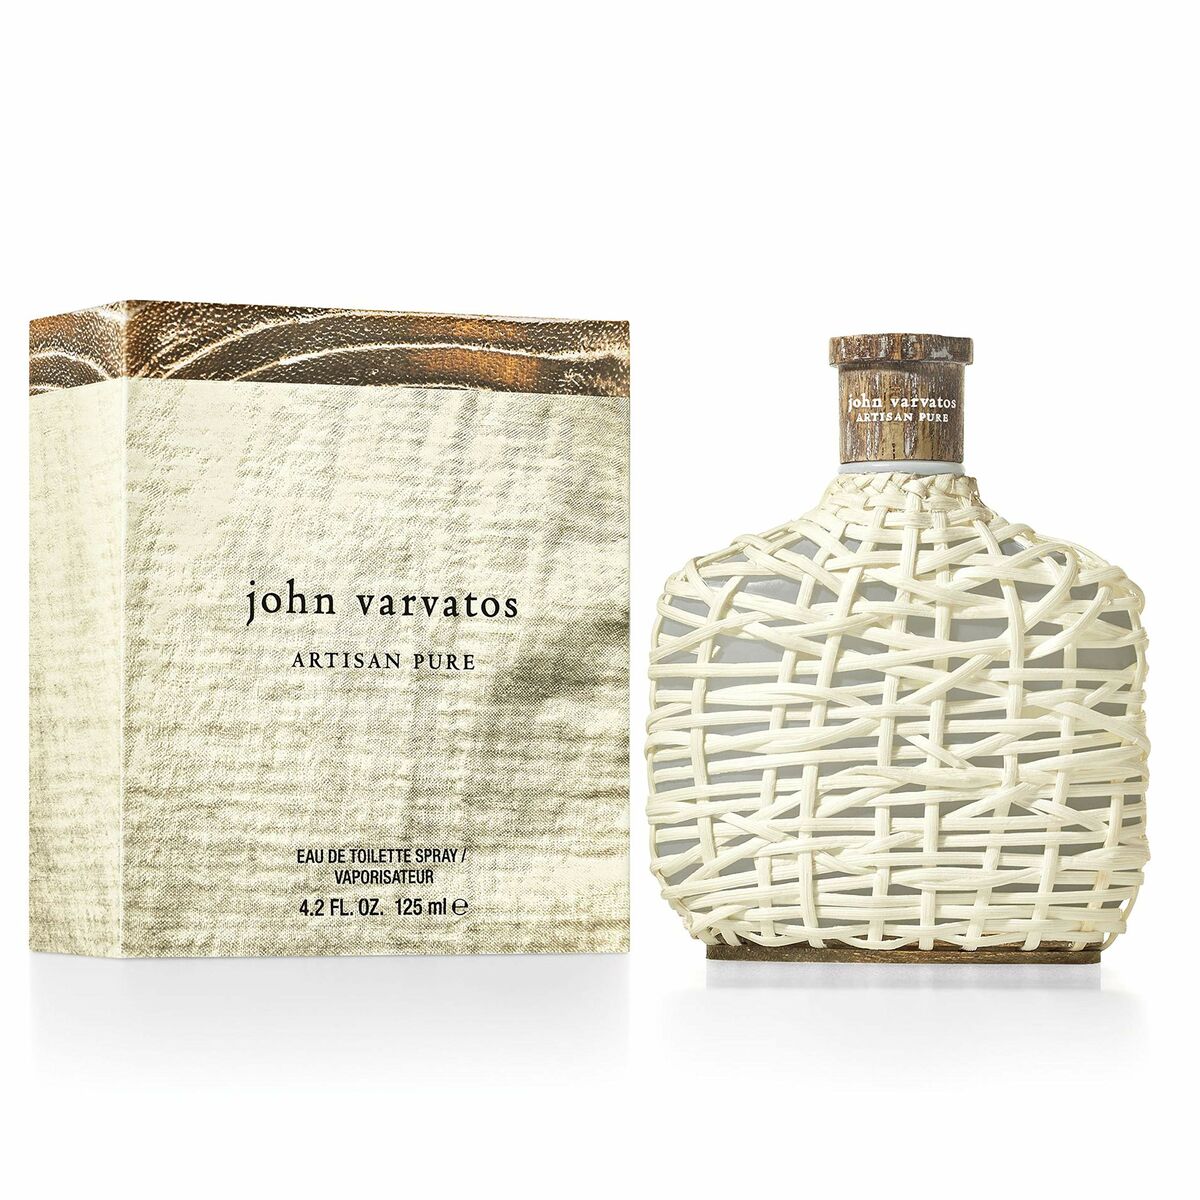 Parfum Bărbați John Varvatos EDT Artisan Pure (125 ml)